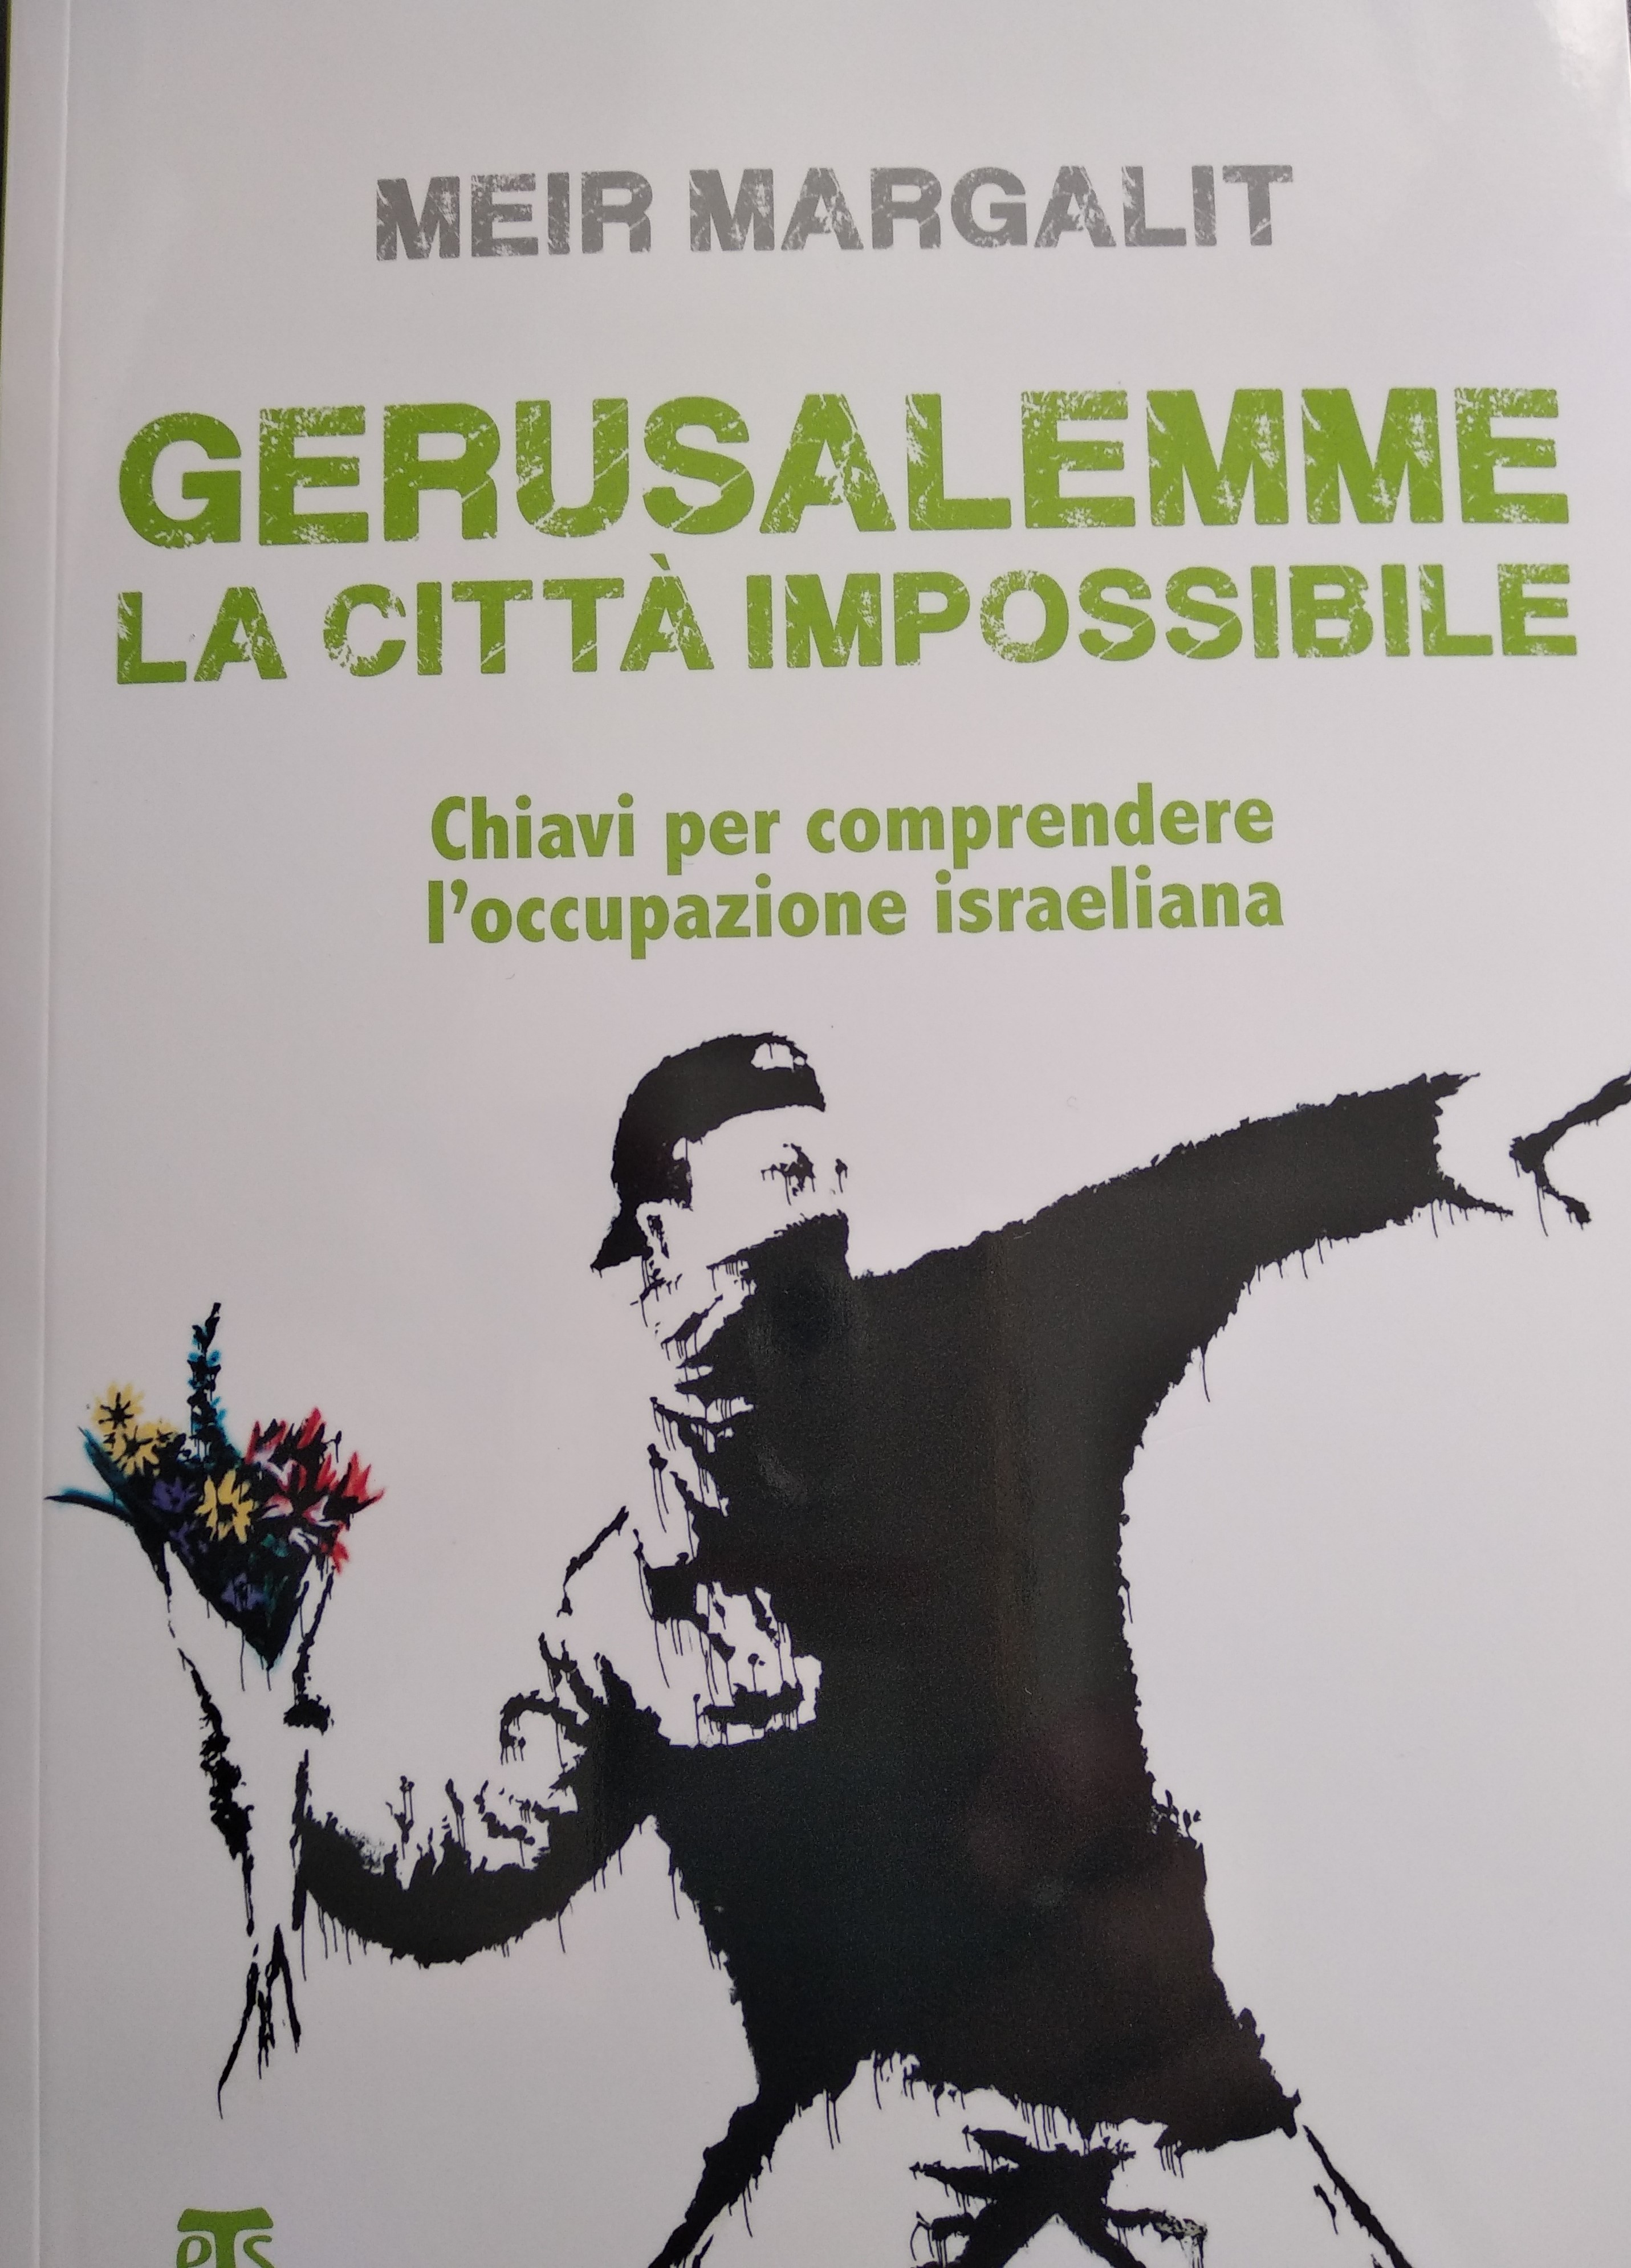 Pubblicato in italiano il libro su Gerusalemme di Meir Margalit.